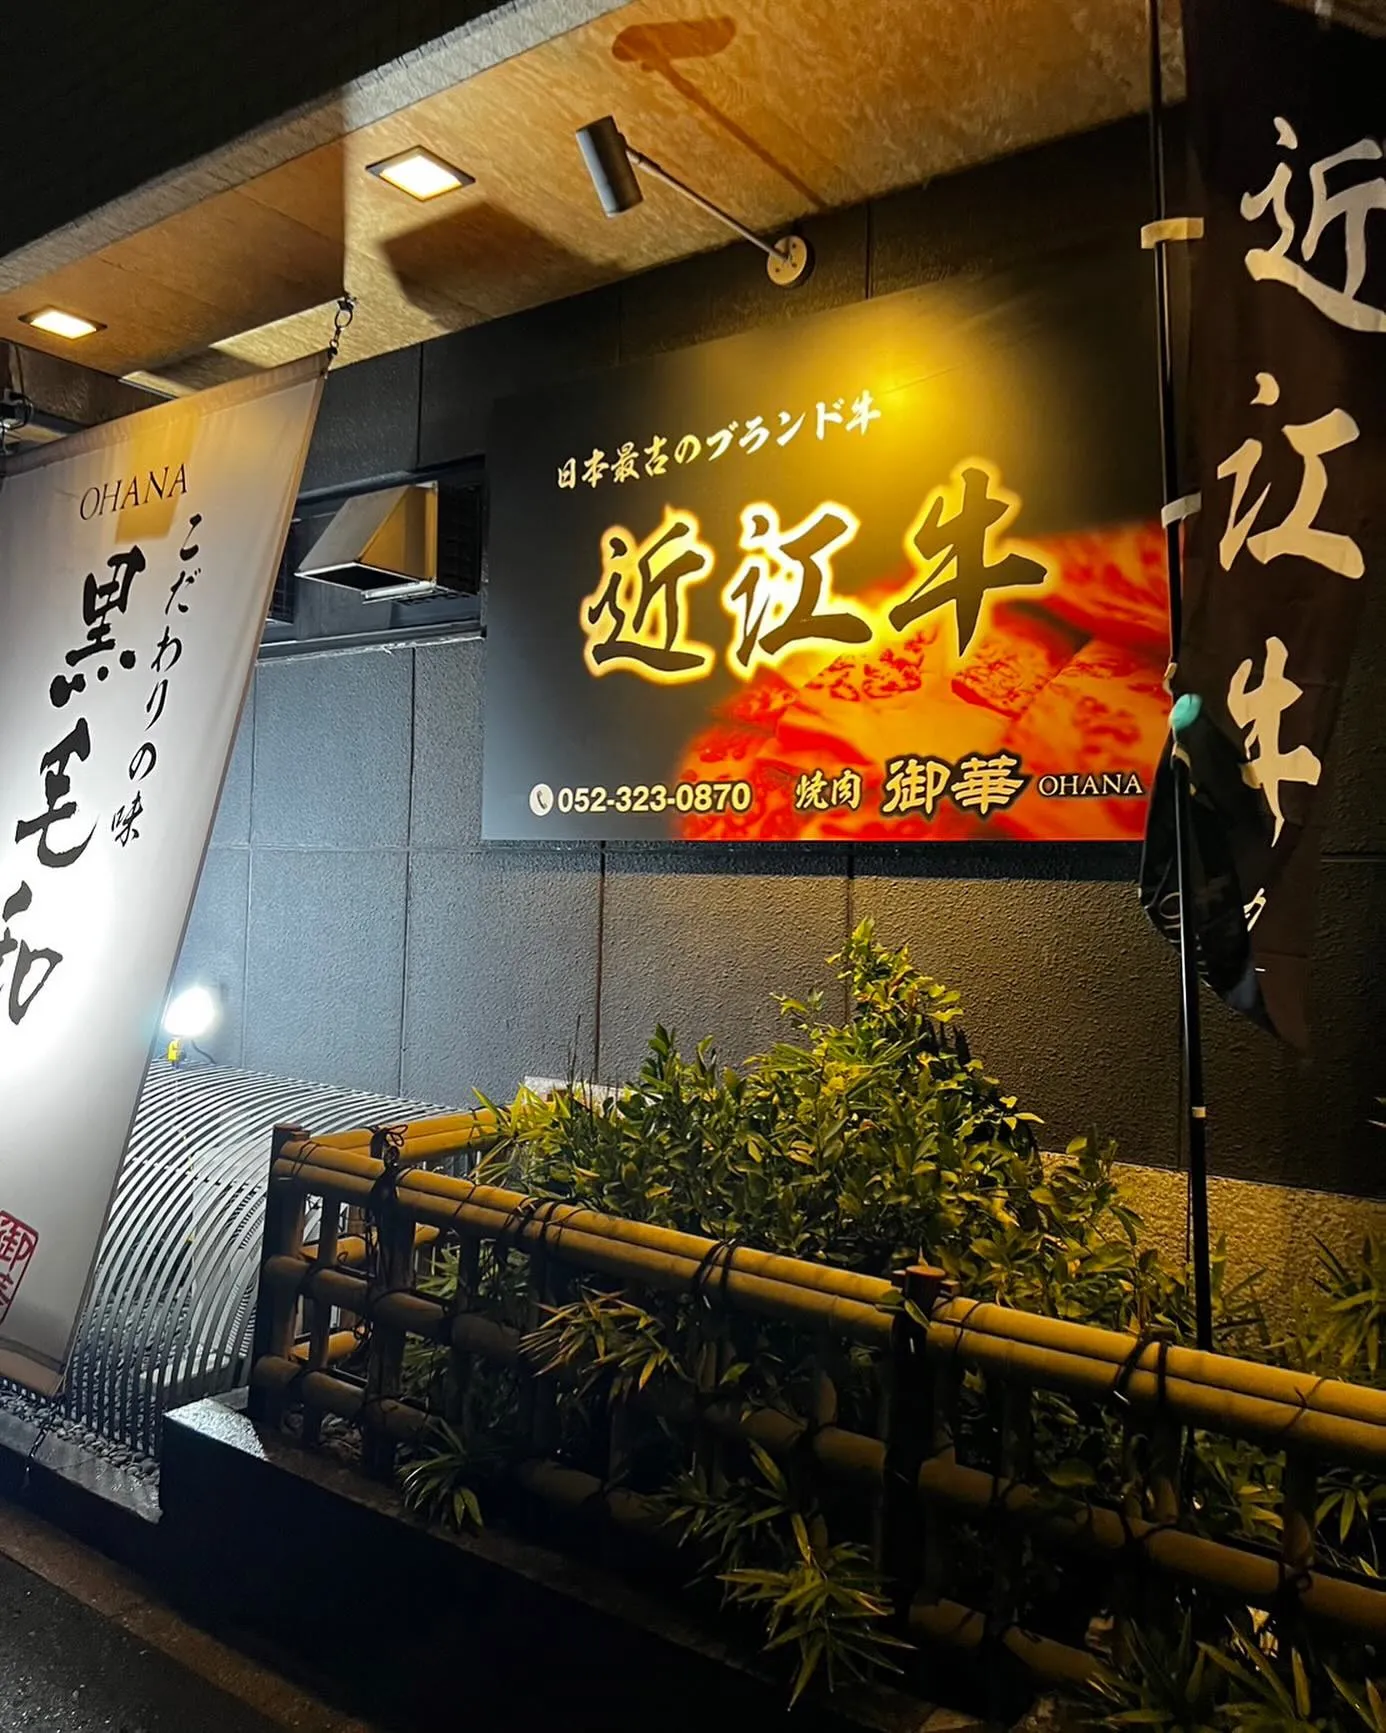 名古屋市で美味しい焼肉店をお探しなら